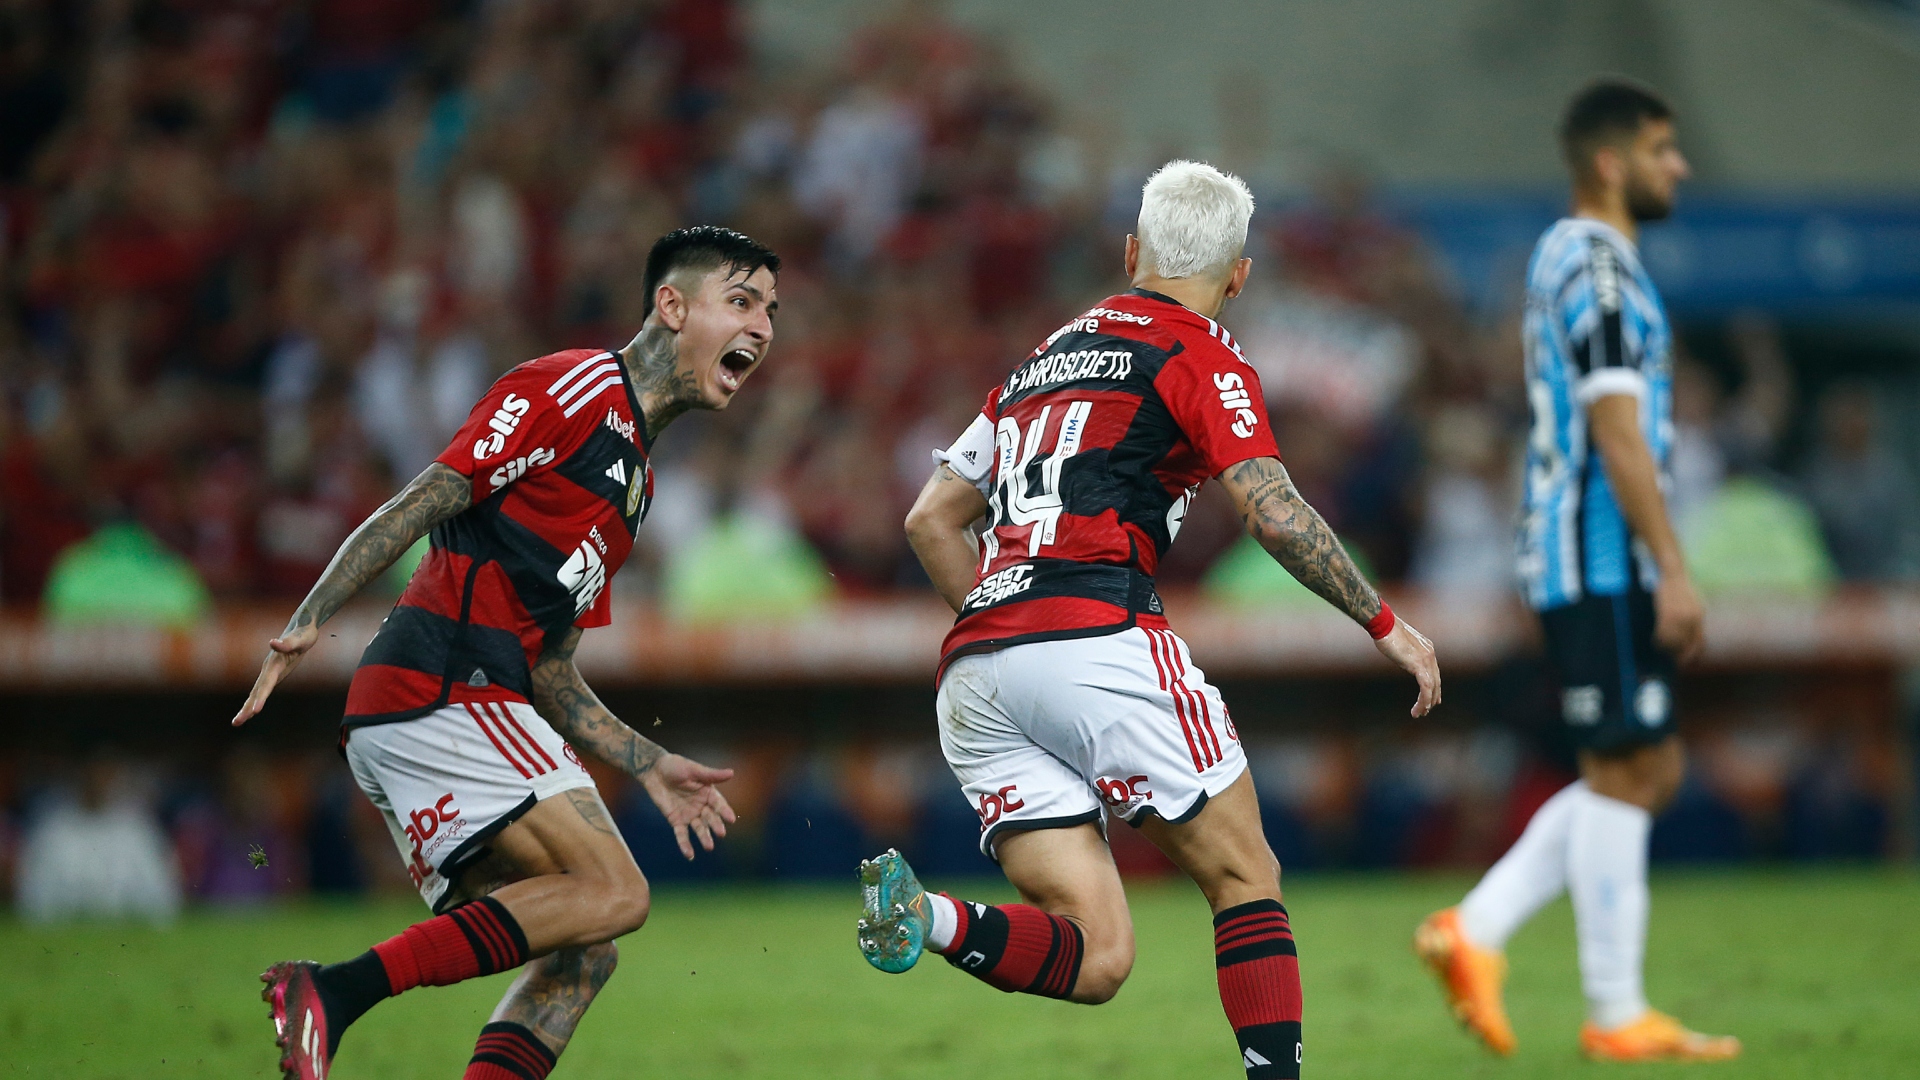 Com a bola rolando, o Flamengo levou a melhor e venceu por 1 a 0 (Crédito: Getty Images)